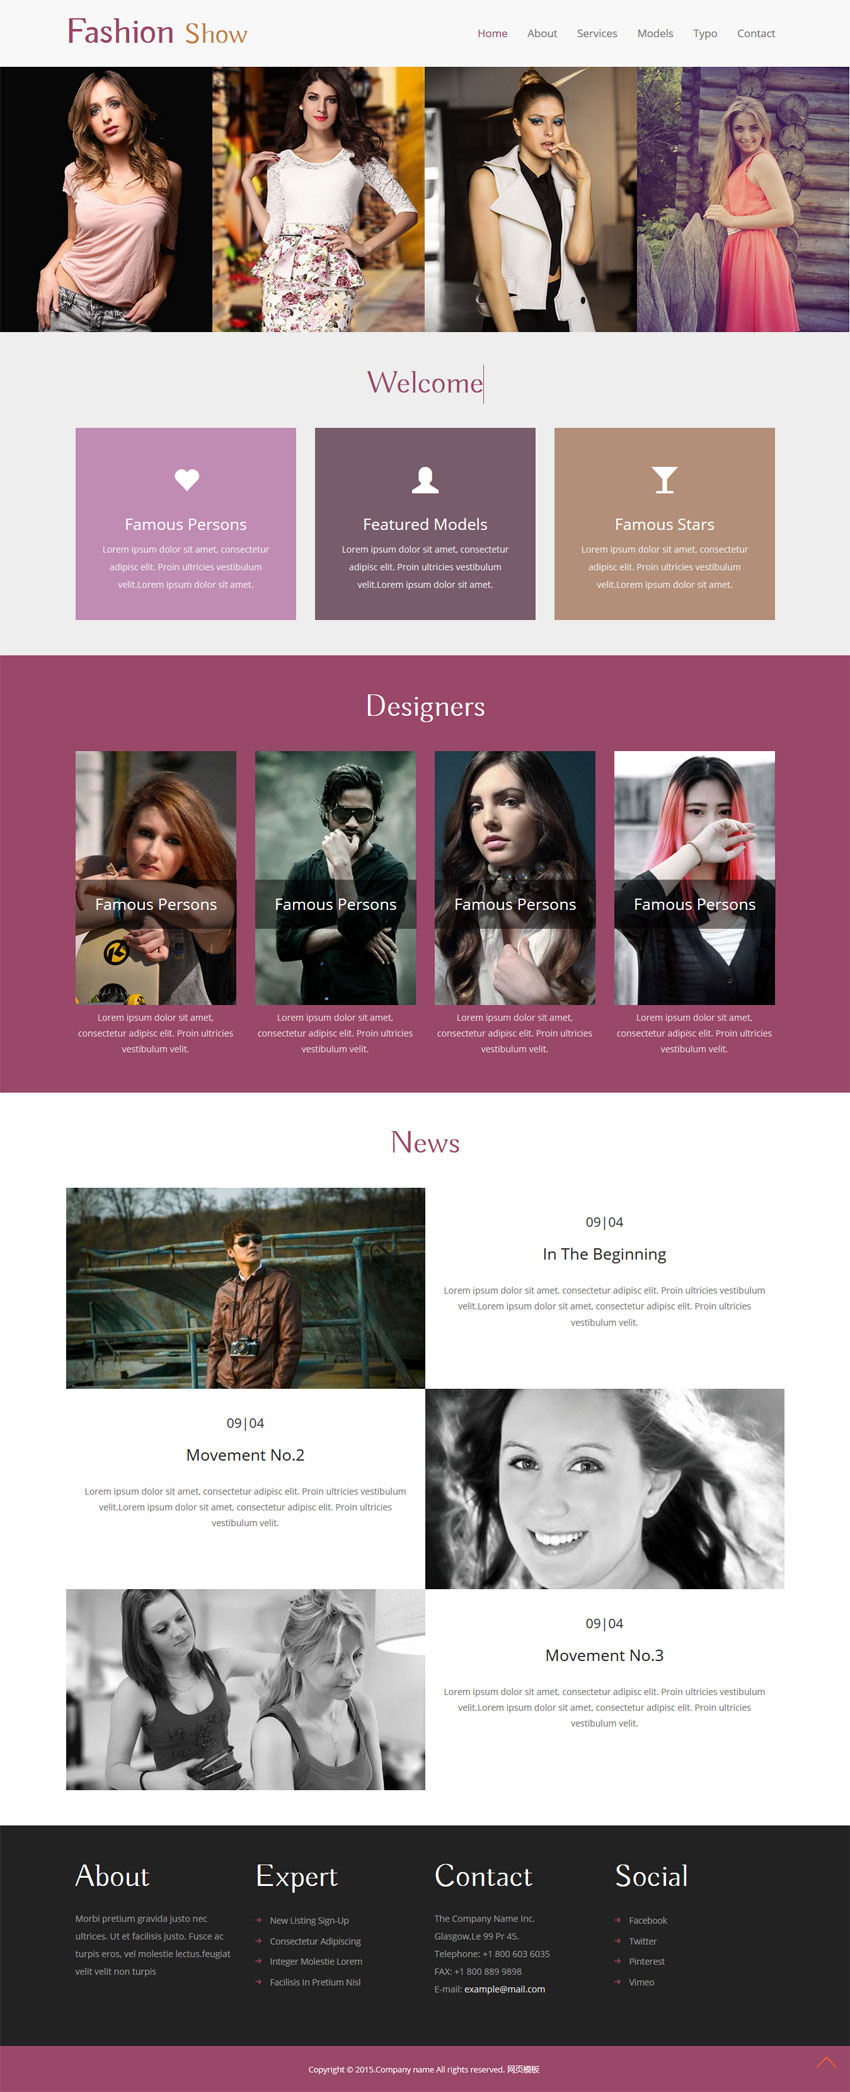 国外简单的女性服装设计公司网站模板html下载